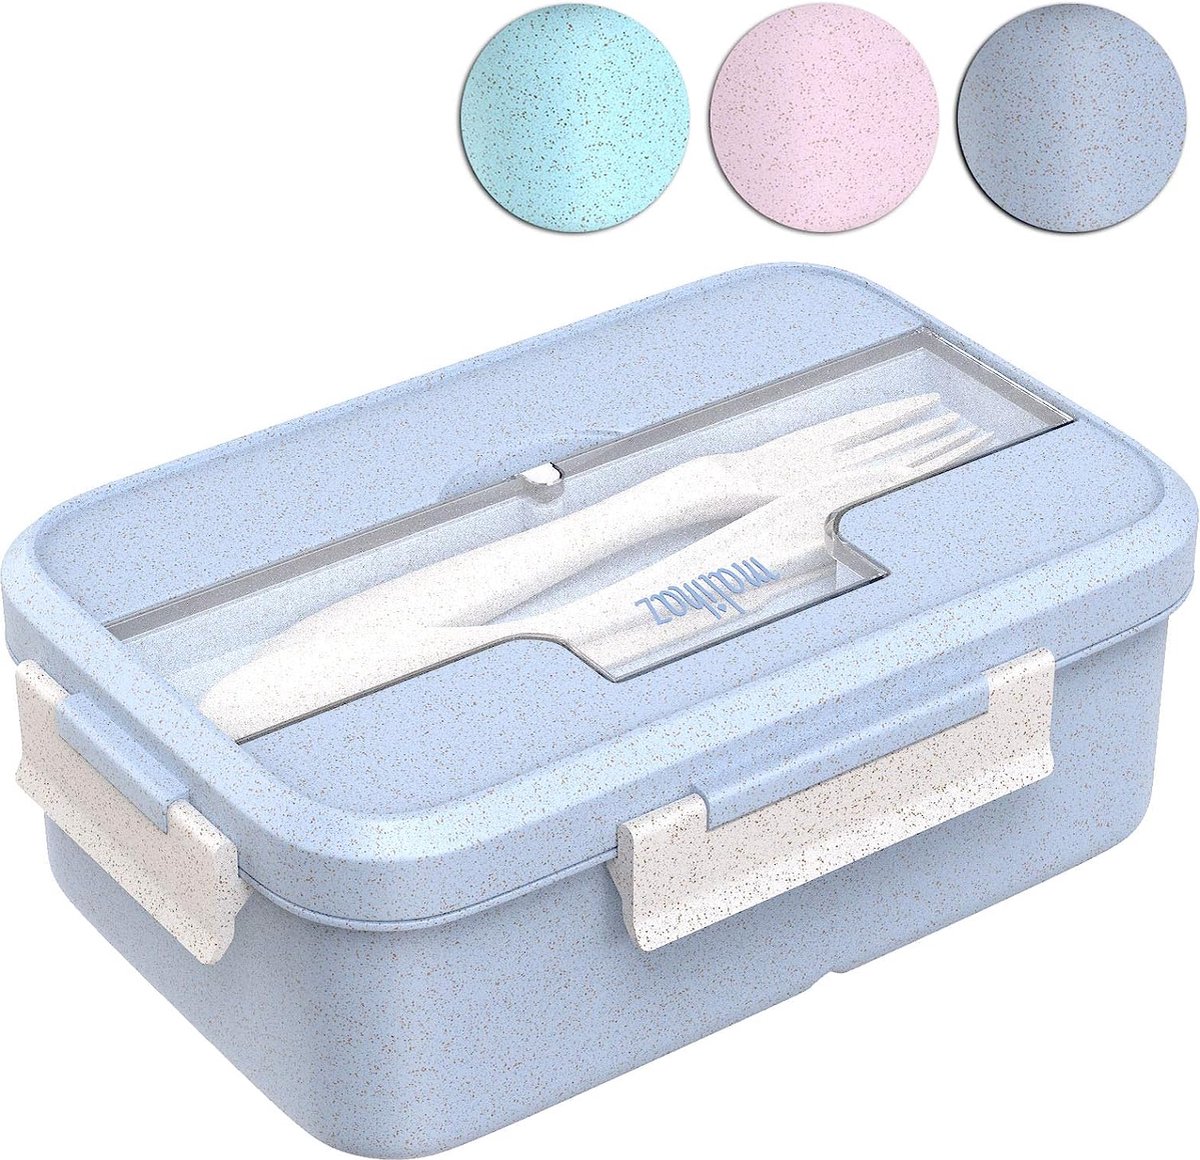 Broodtrommel incl. bestek, lunchbox van biologisch gebaseerde tarwestro, vaatwasmachinebestendige bentobox met drie vakken (blauw)